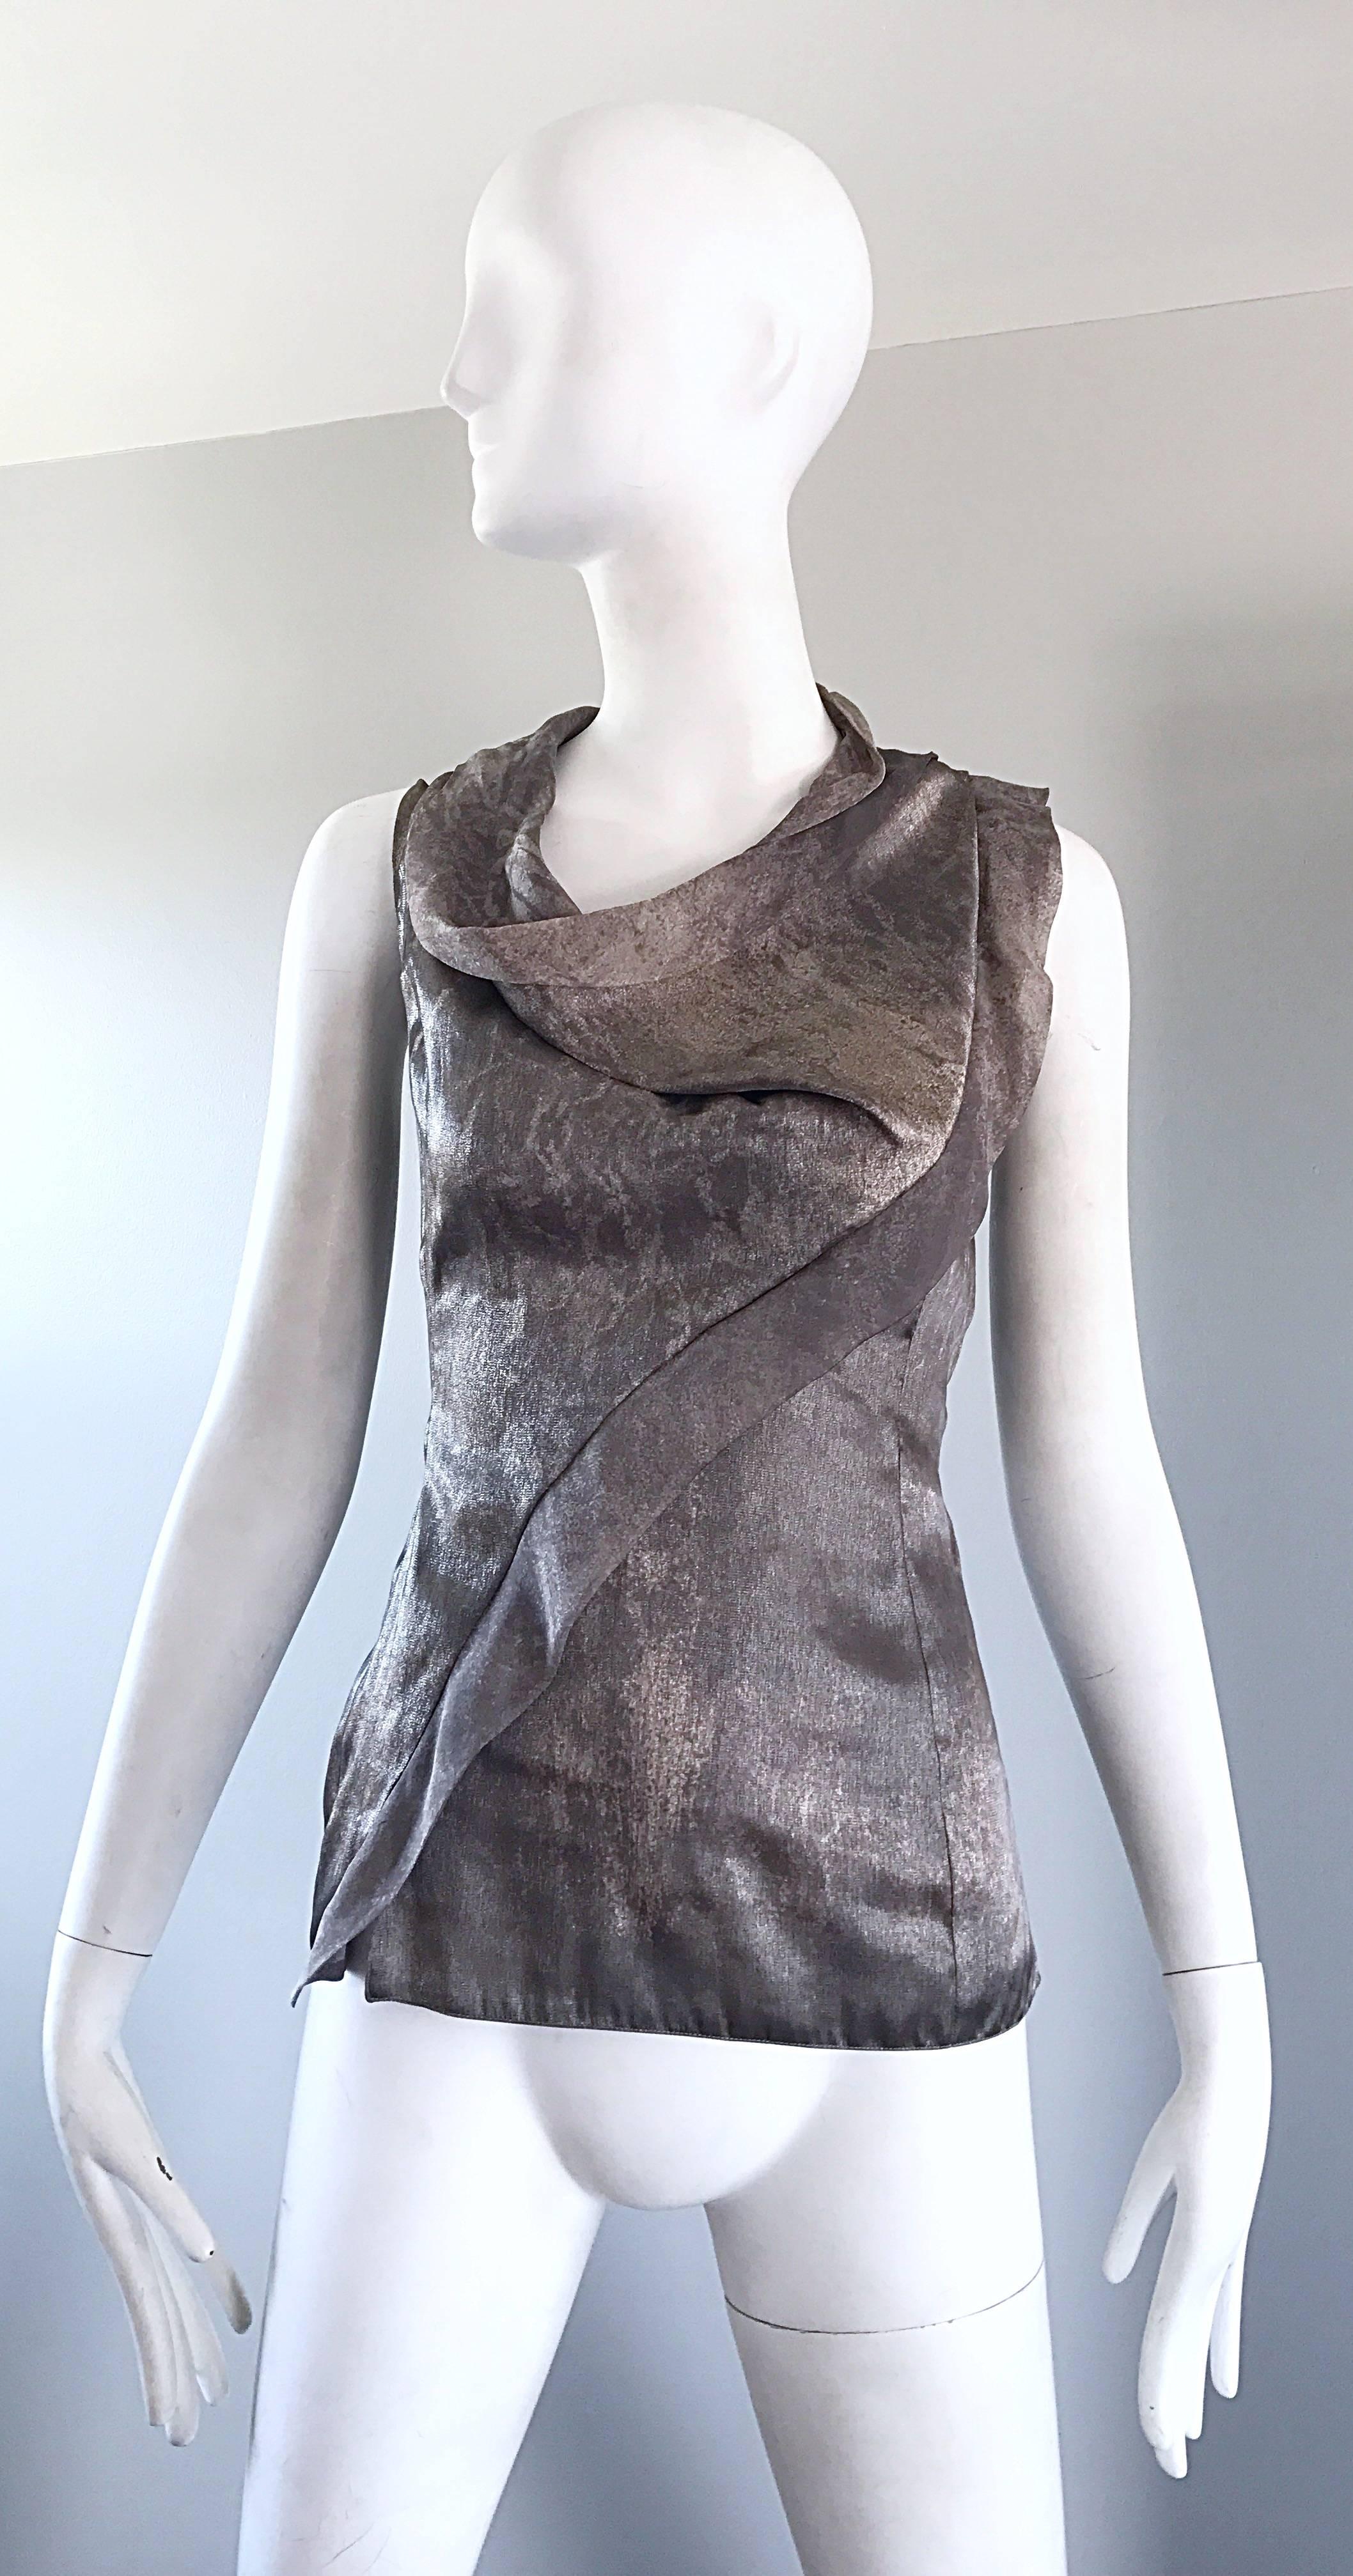 Wunderschönes ärmelloses Avant Garde Hemd von GIORGIO ARMANI aus den 90ern in Silber und Rotguss! Das Kleid aus luxuriöser Seide hat einen exzellenten drapierten Ausschnitt und eine asymmetrische Rüsche entlang des vorderen Oberteils, die über die